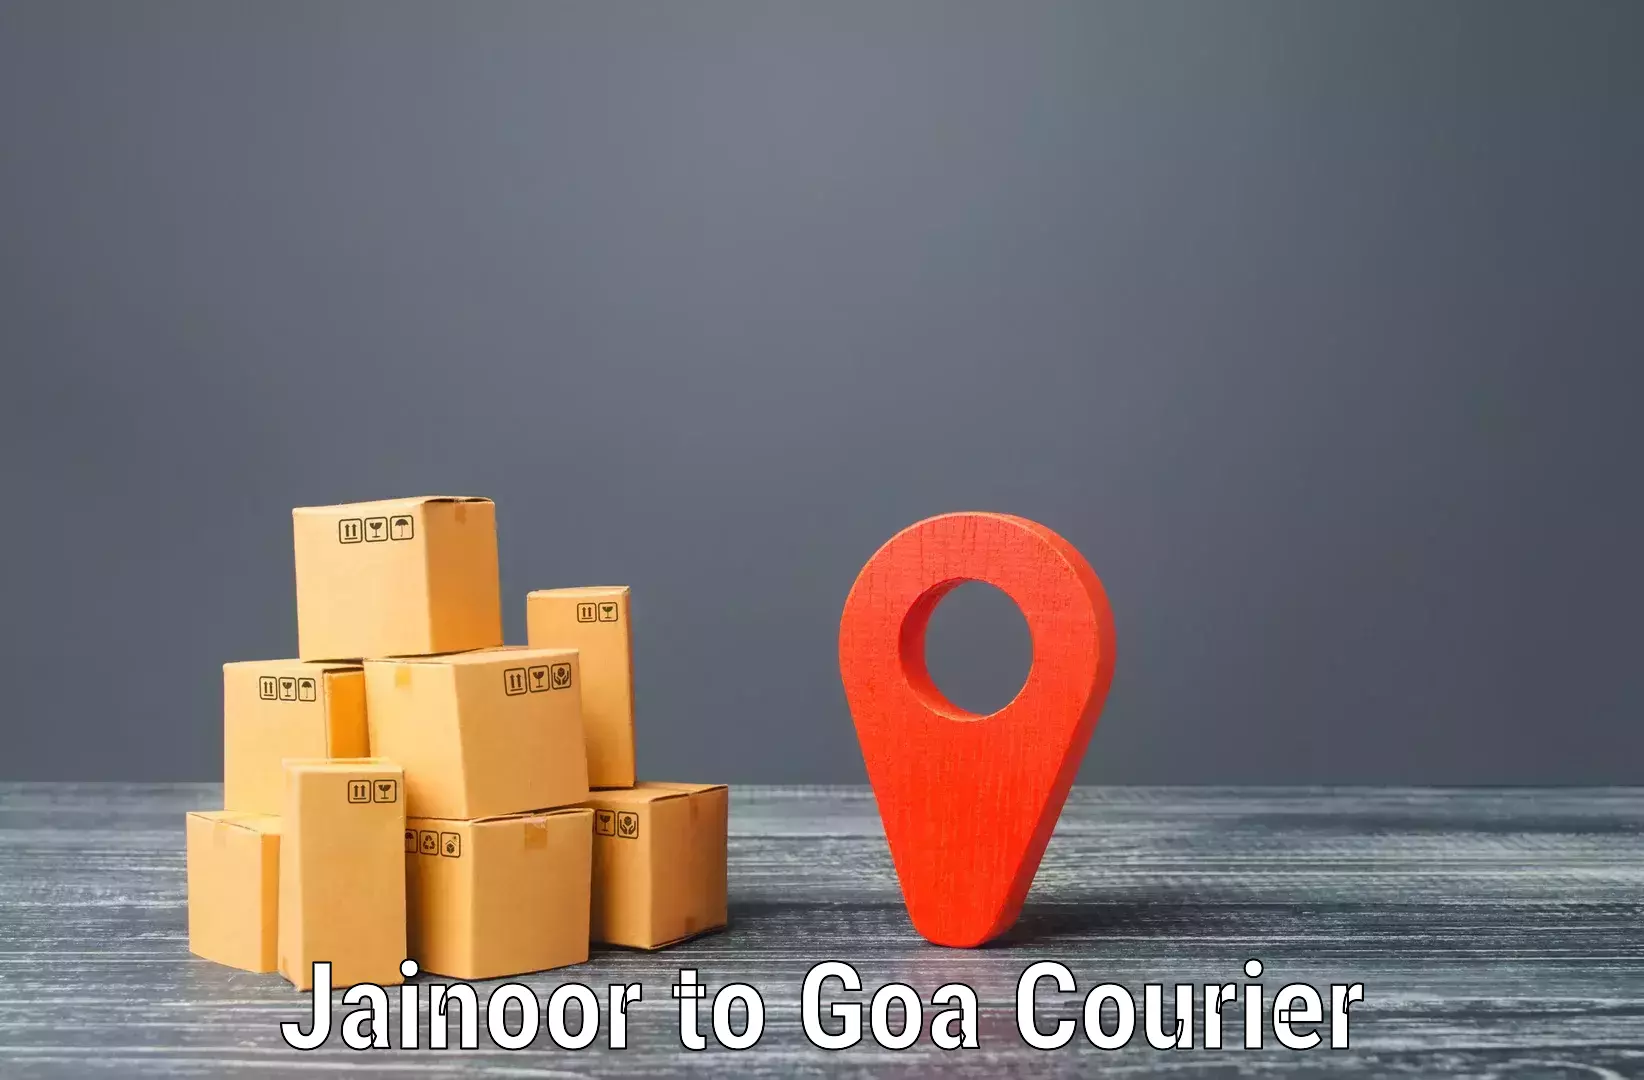 Efficient courier operations Jainoor to Sanvordem